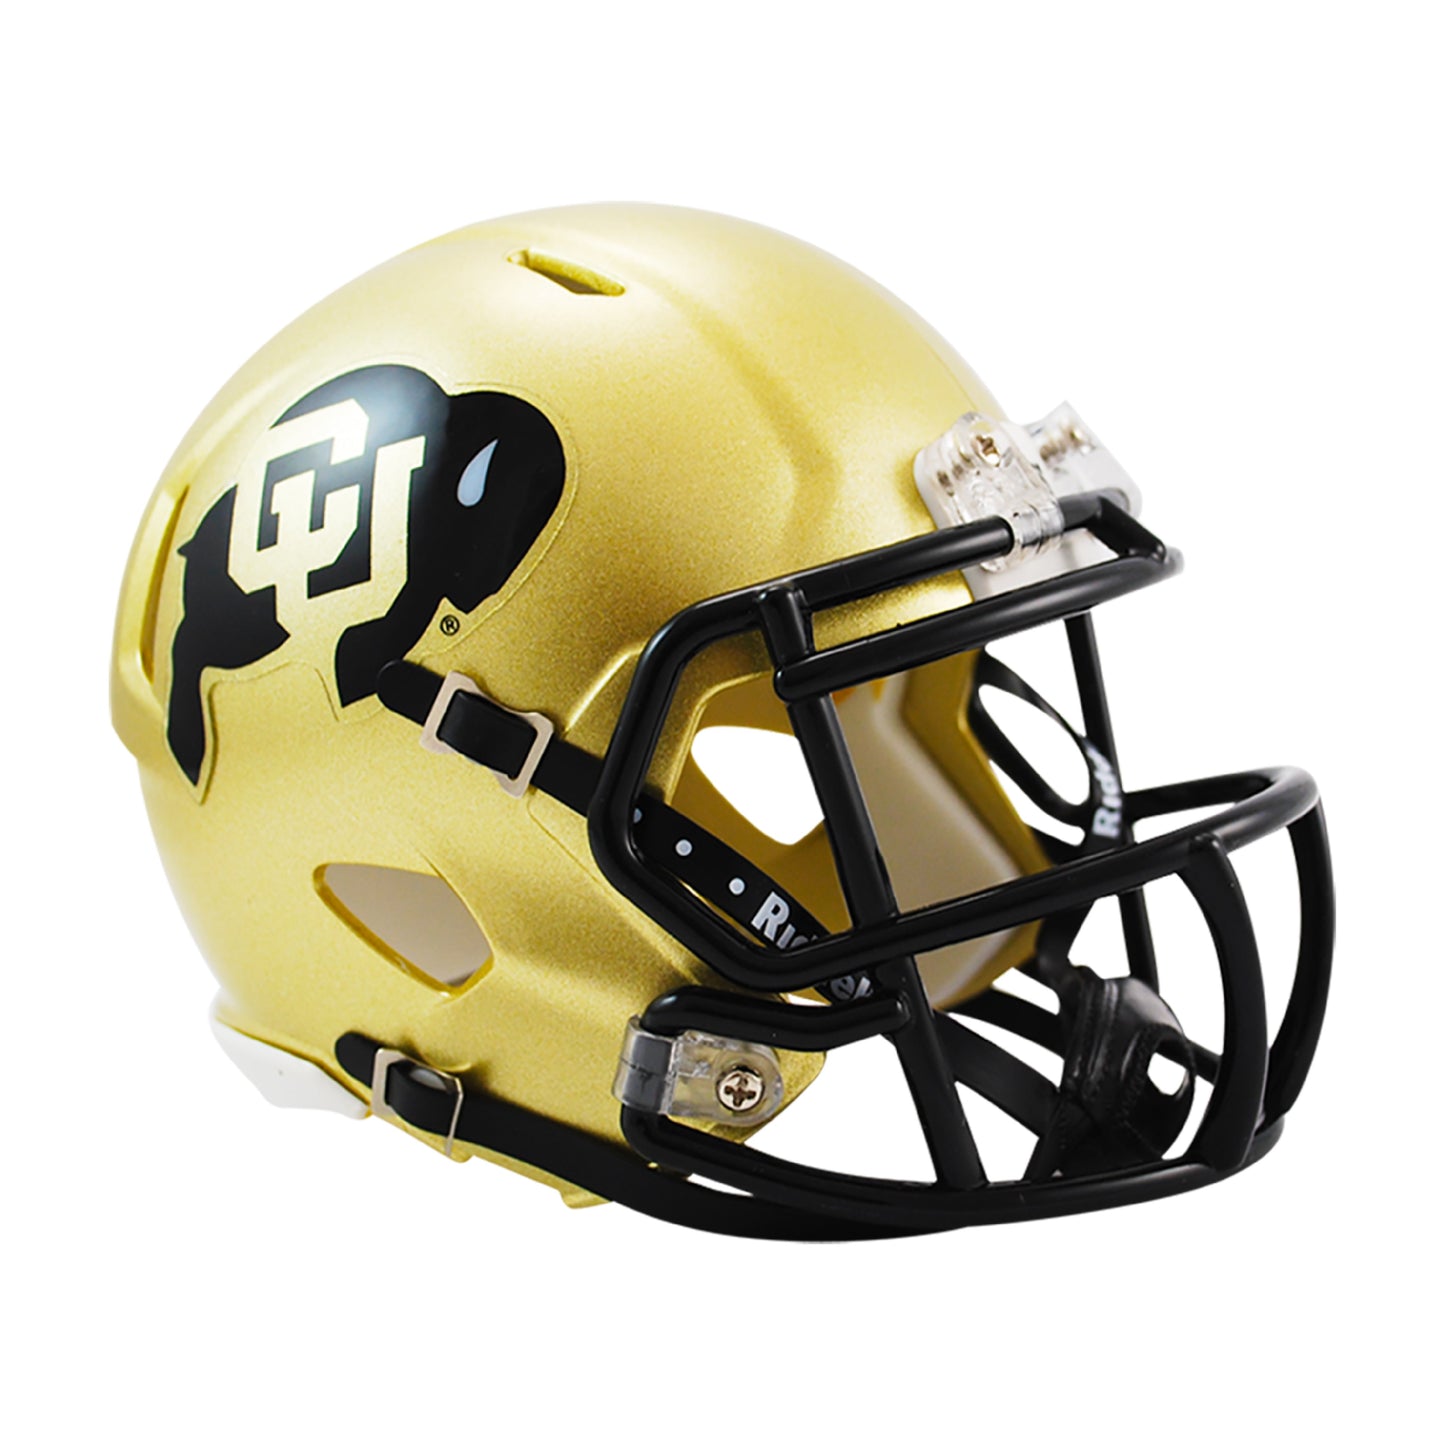 Colorado Buffaloes Gold Shell Riddell Speed Mini Football Helmet